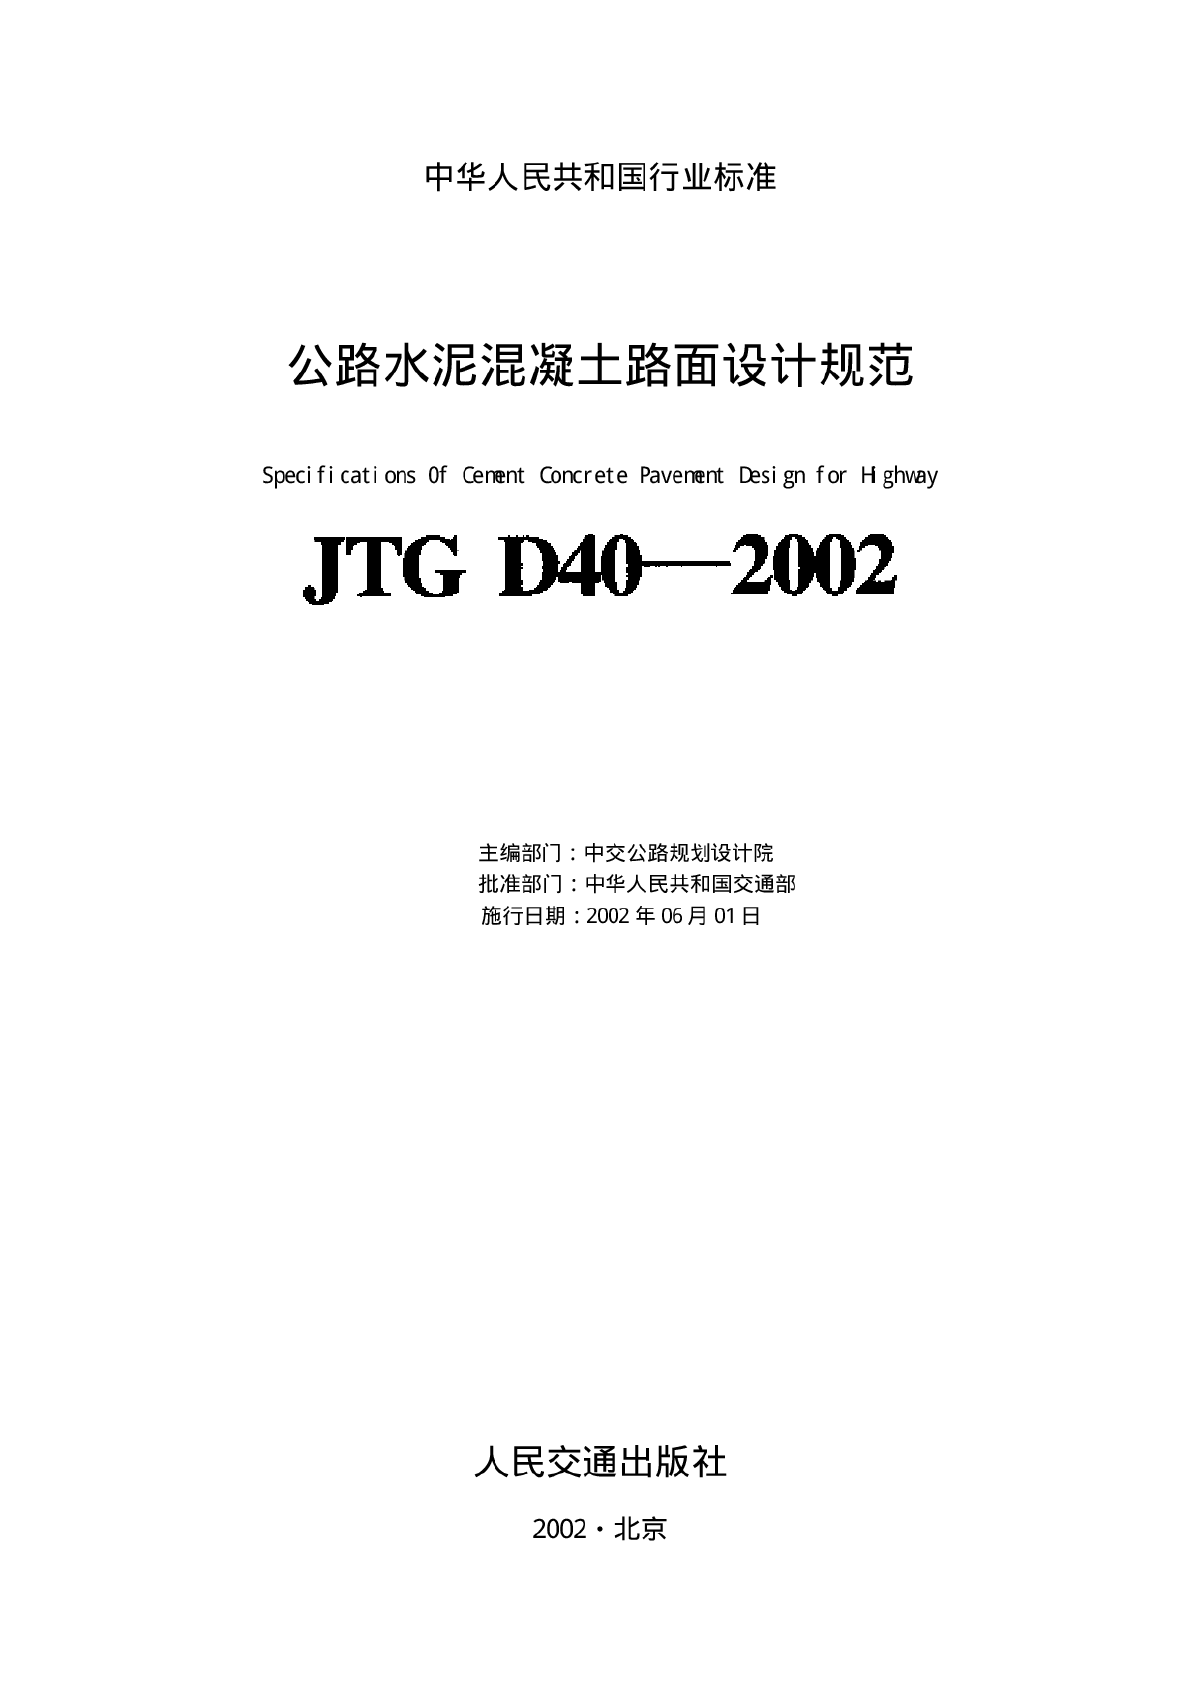 JTG D40-2002公路水泥混凝土路面设计规范-图二